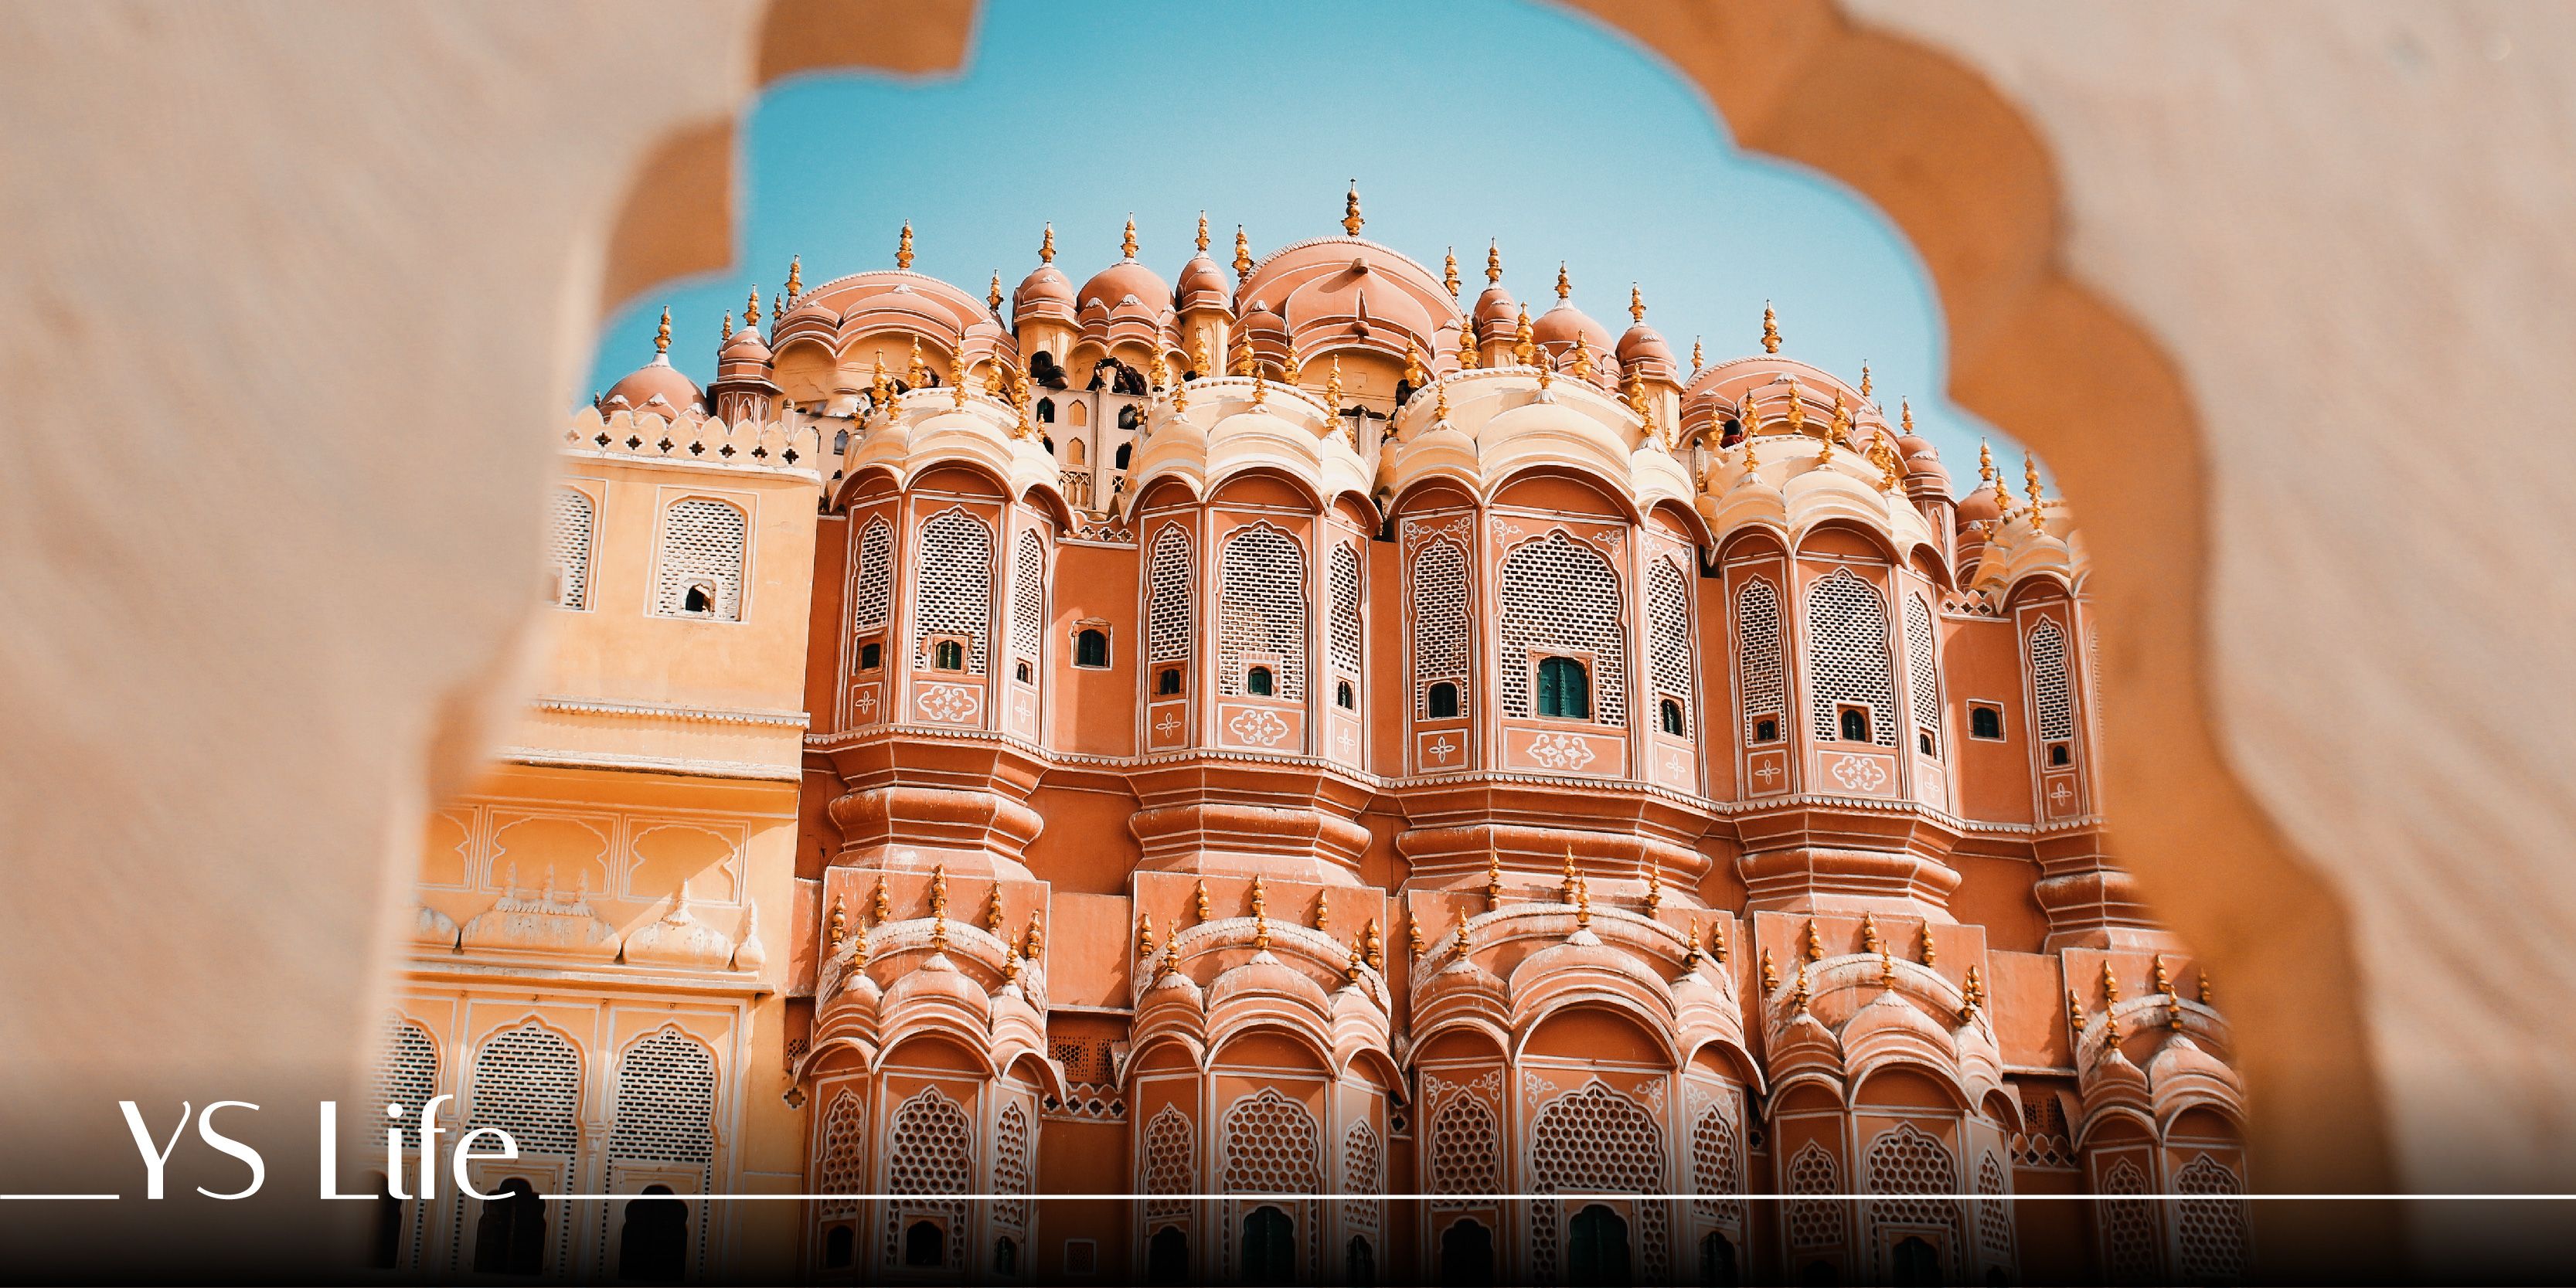 Deepotsav will be celebrated in Ramniwas Bagh-traffic alert | जयपुर में कल  अल्बर्ट हॉल पर भव्य रामोत्सव: रामनिवास बाग के चारों तरफ ट्रैफिक डायवर्जन  रहेगा, जानिए क्या ...